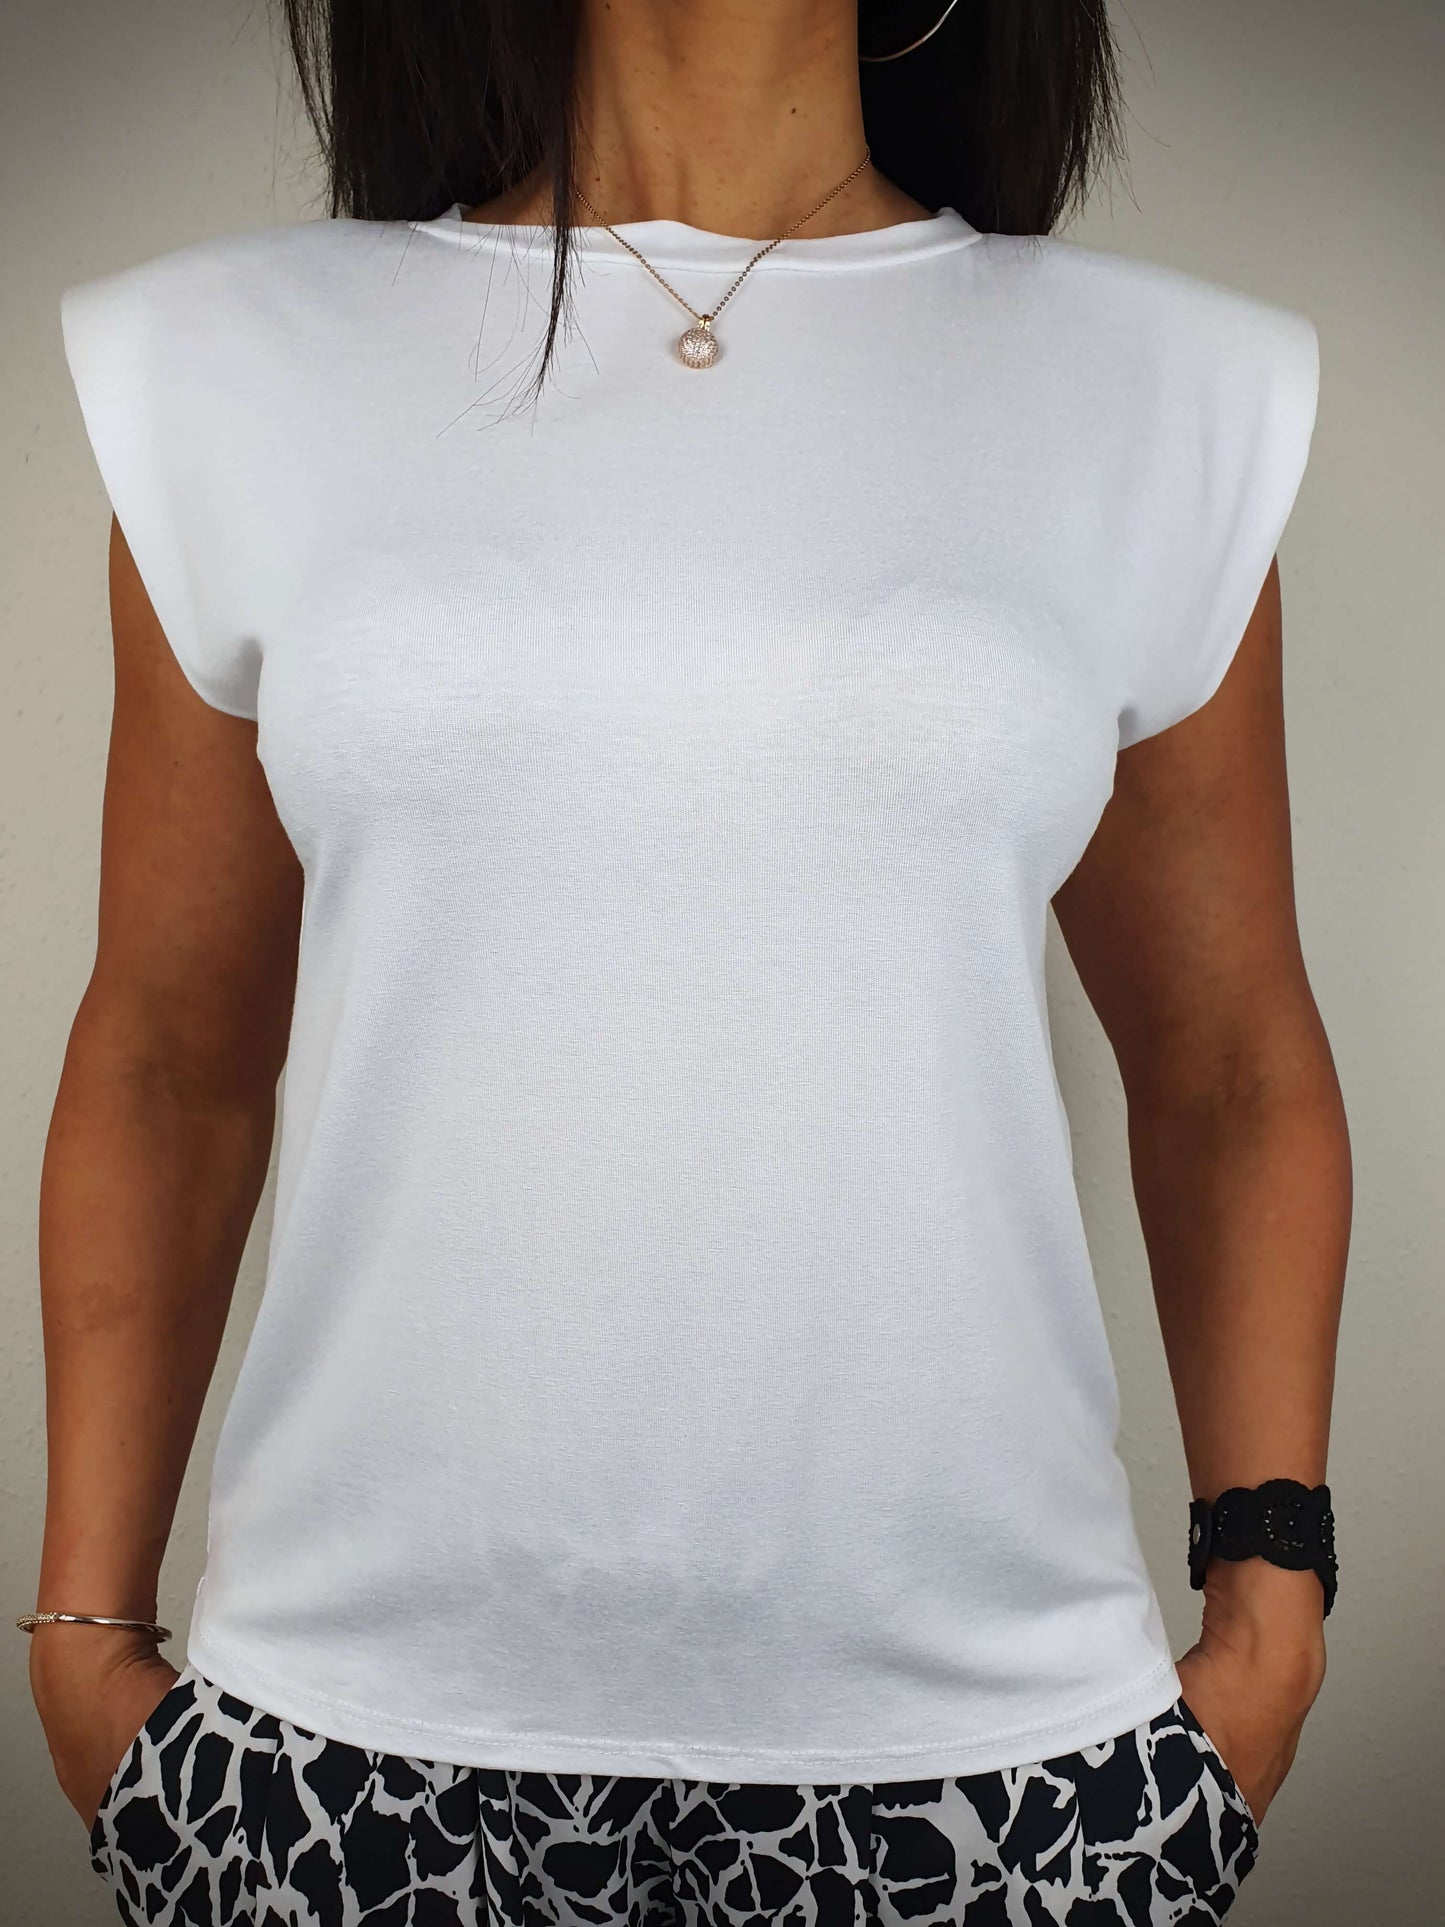 Le T-shirt blanc est conçu avec une coupe droite et un col rond classique. Ses manches courtes sont dotées d'épaulettes. Fabriqué en Italie, il est composé de 95% de viscose et 5% d'élasthanne.